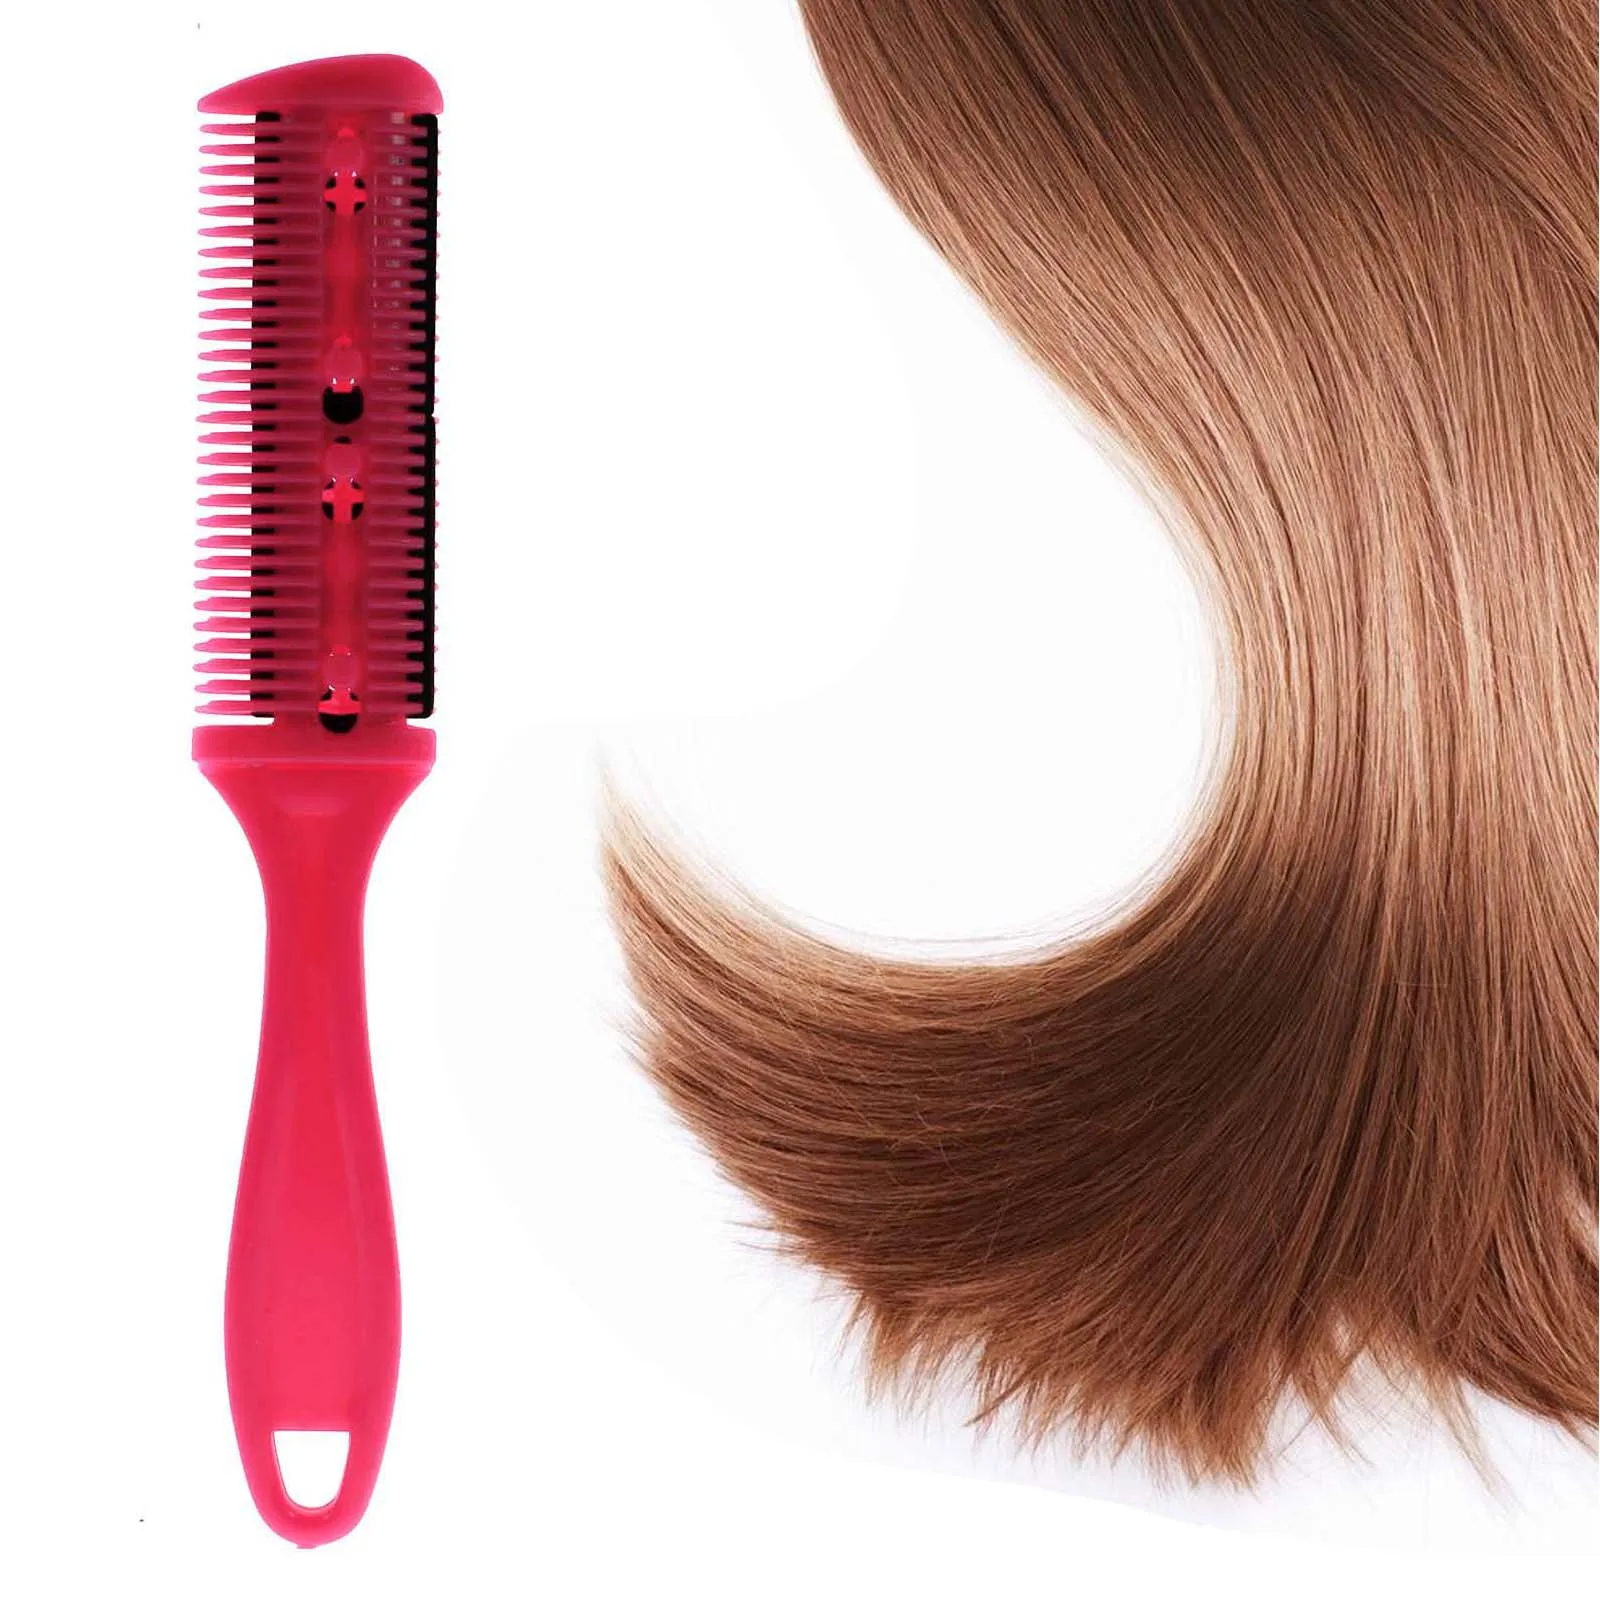 Профессиональные Парикмахерские Ножницы DIY для стрижки волос стиль бритвы гребень парикмахерские истончение триммер внутри лезвия(случайный цвет